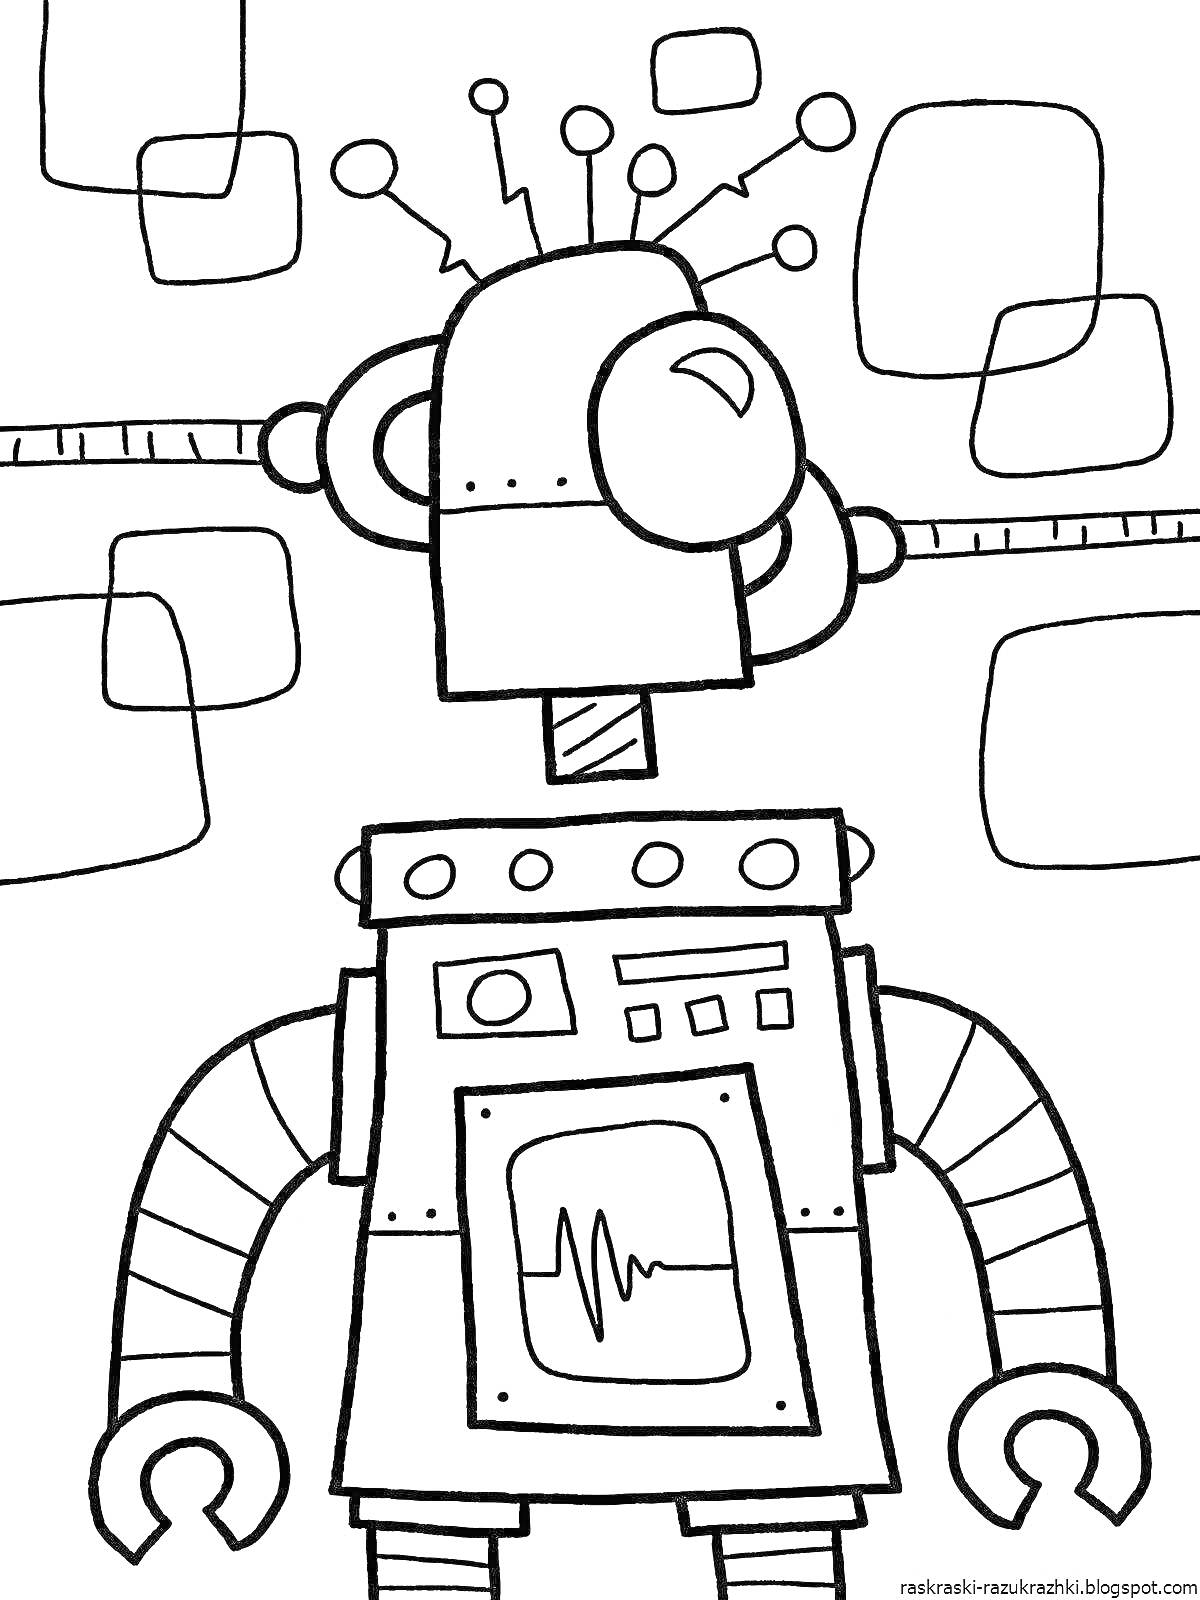 Раскраска Робот с антеннами, экранами и передатчиками в фоне